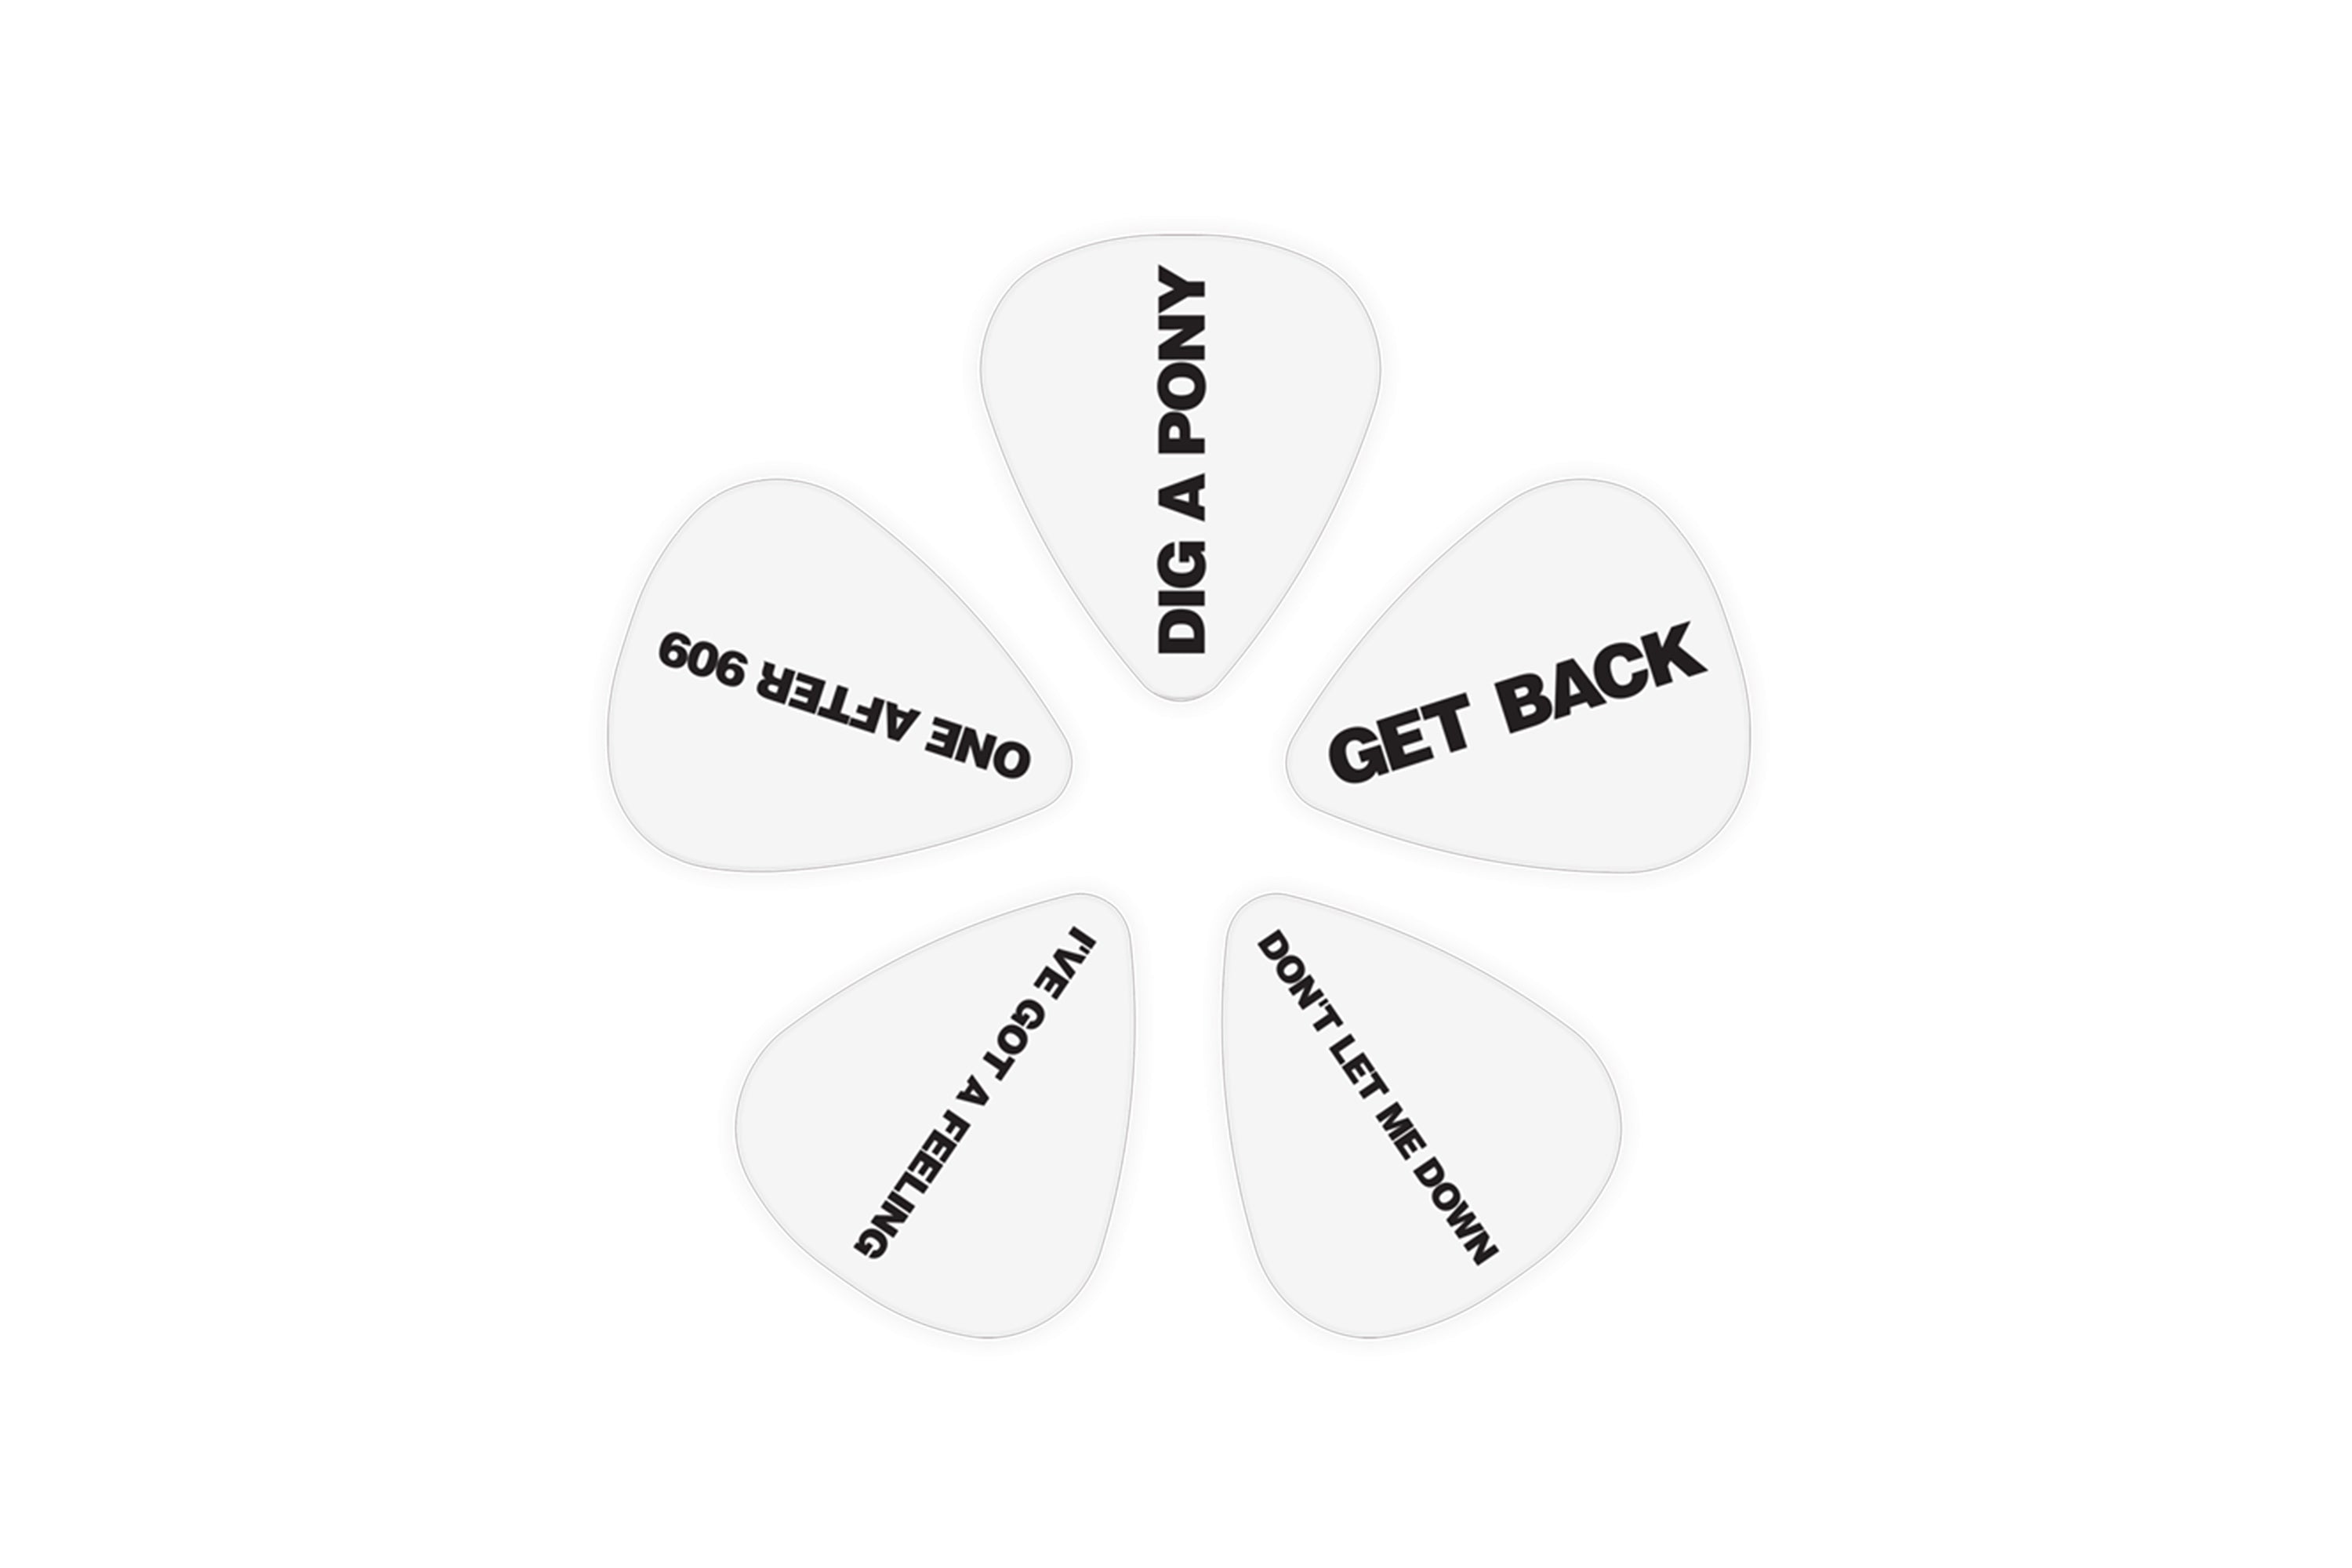 D'Addario Beatles "Get Back" Picks